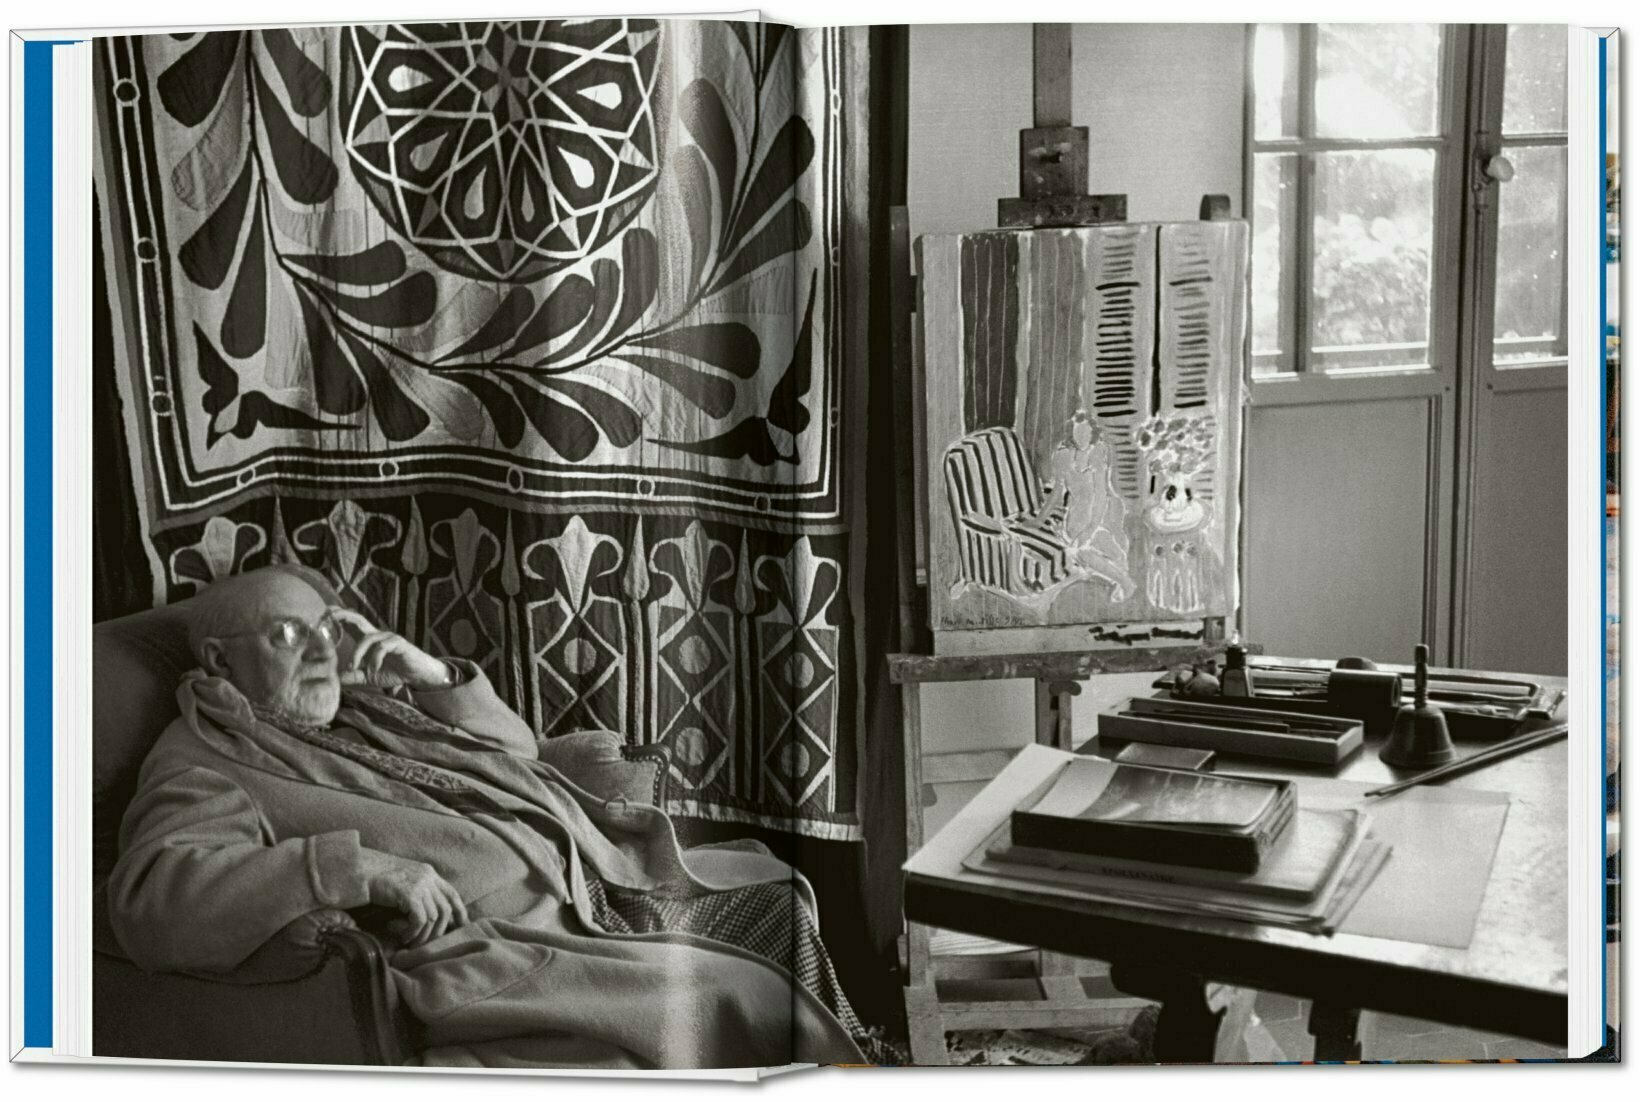  Henri Matisse. Scherenschnitte. 40th Ed. 